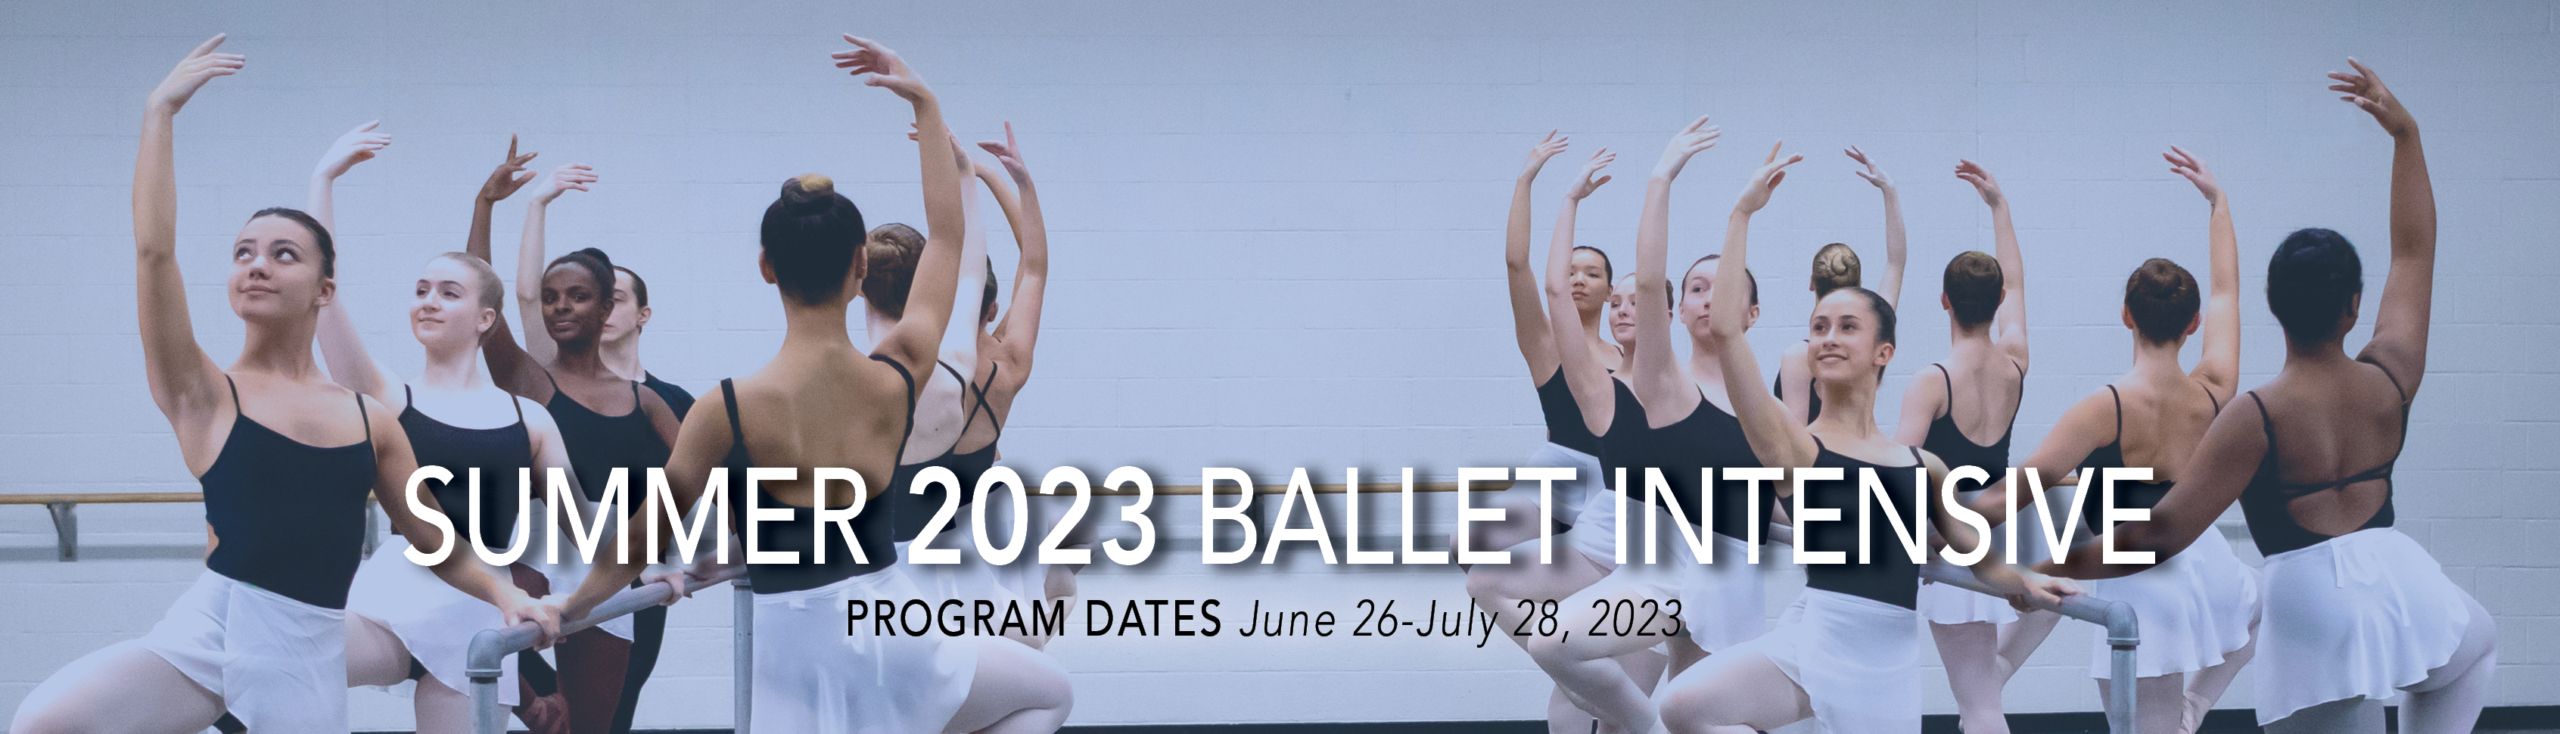 Grand Rapids Ballet Summer 2023 Intensives Grand Rapids, MI